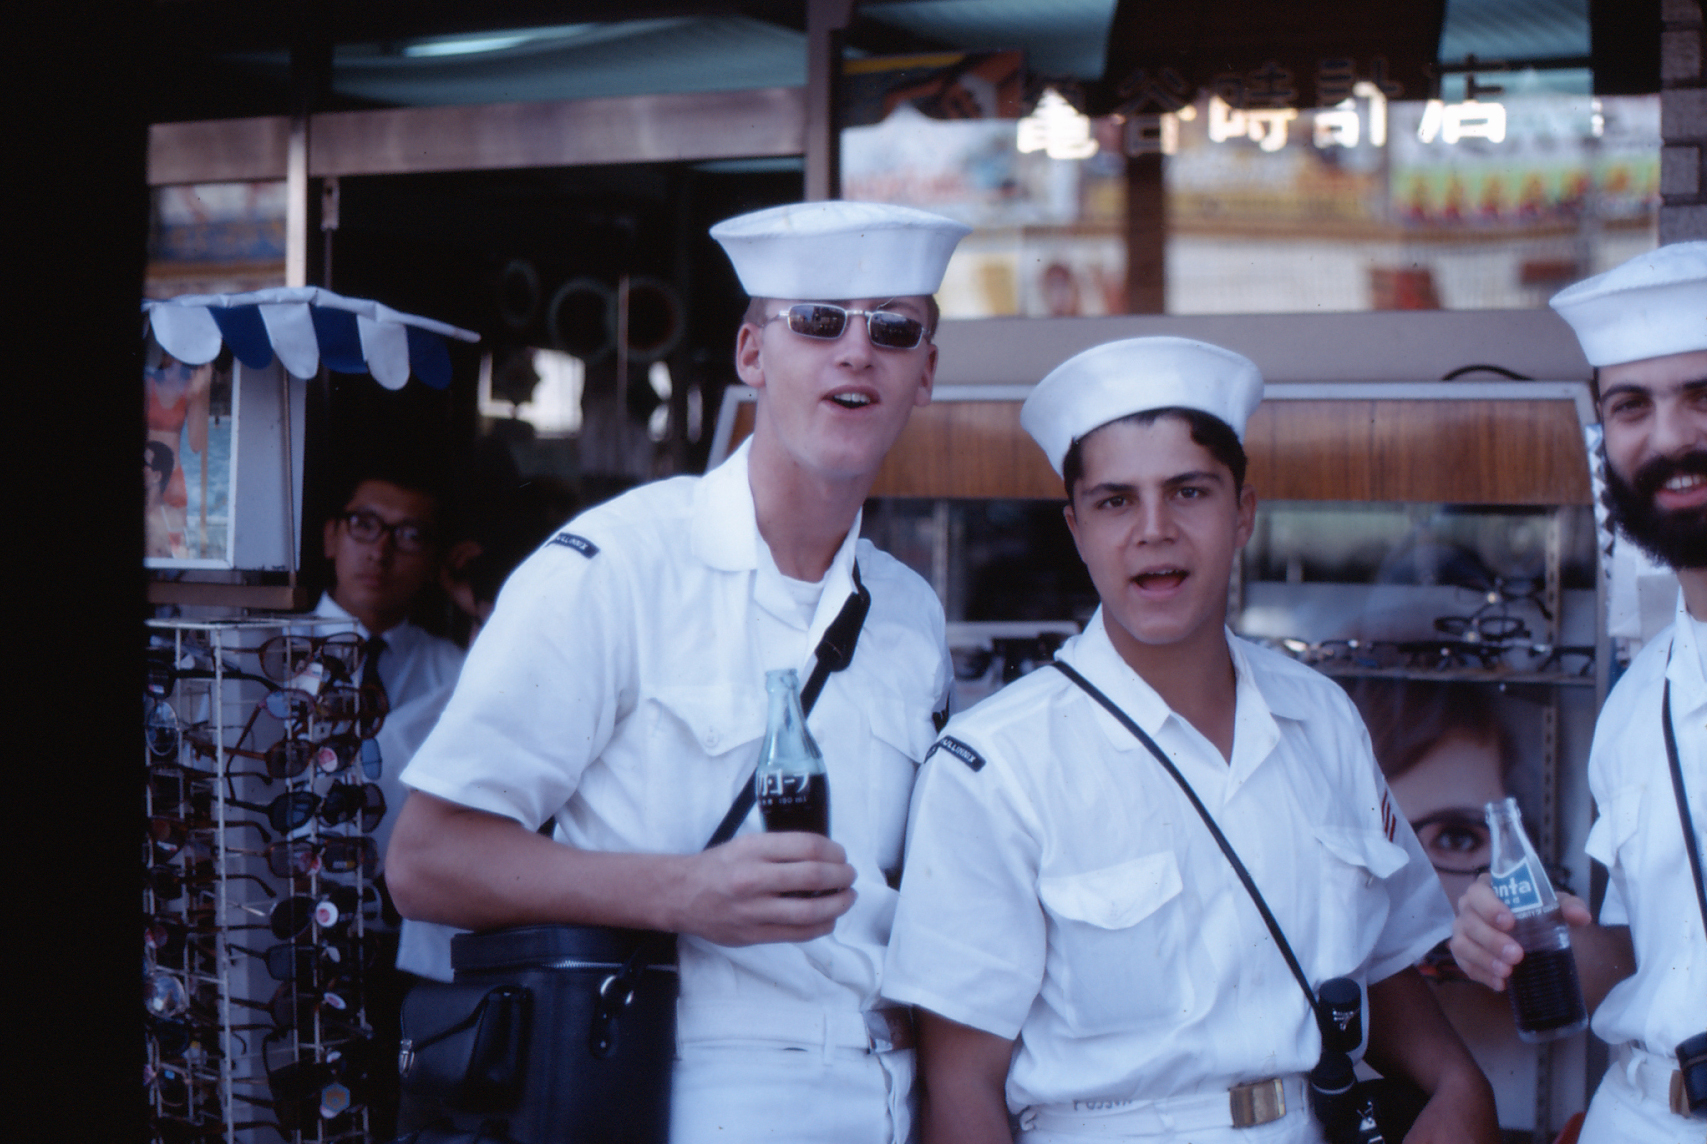 Dennis Houg (left) John Vasco (right) with the Japanese coke in Sasebo